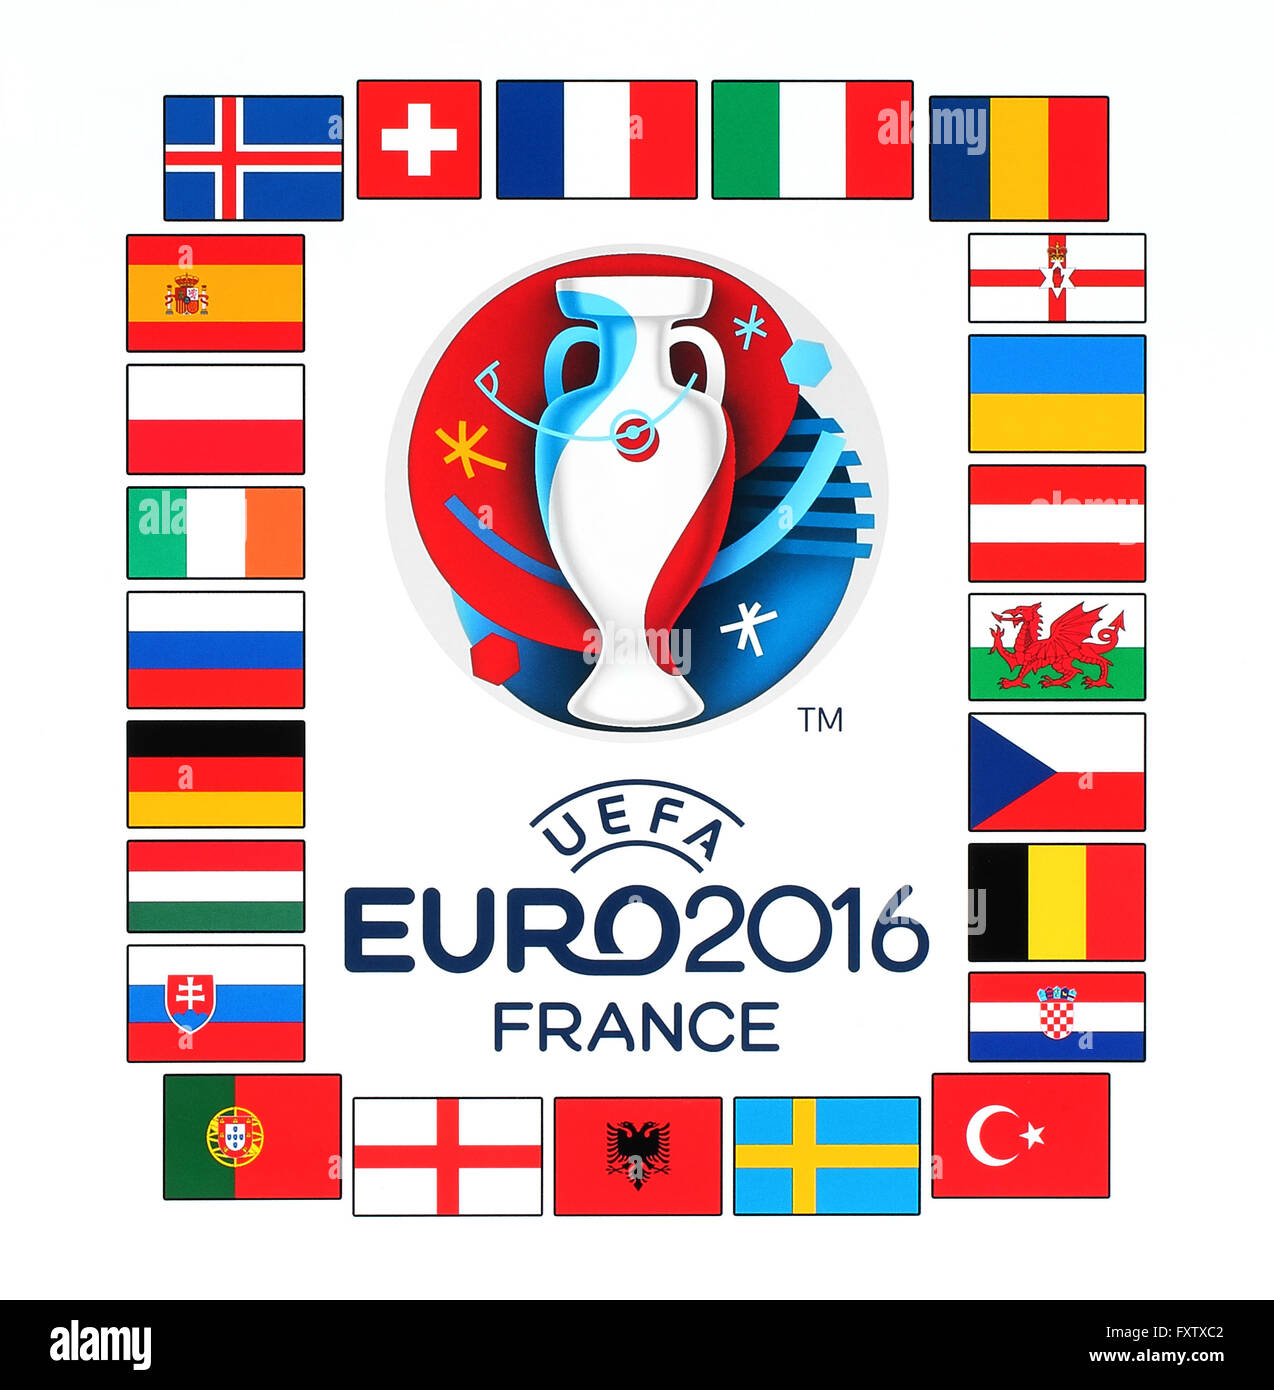 Offiziellen Logo Der Uefa Europameisterschaft 16 In Frankreich Mit Den Flaggen Der Teilnehmenden Lander Stockfotografie Alamy